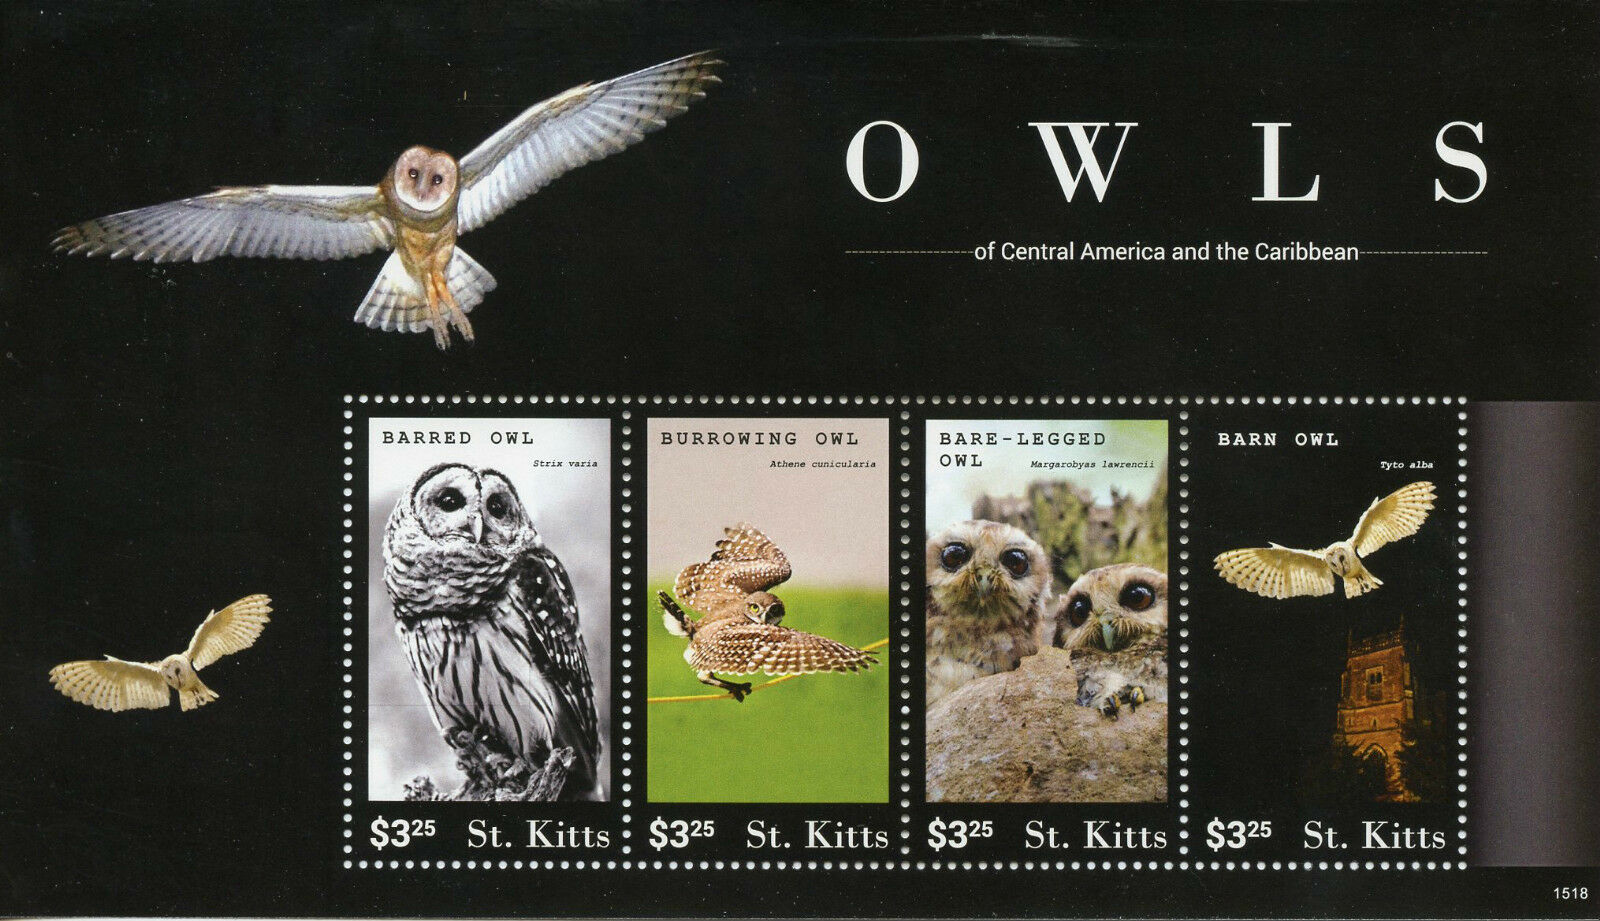 St Kitts 2015 MNH Owls Cent America & Caribbean 4v M/S II Birds Barn Owl Stamps